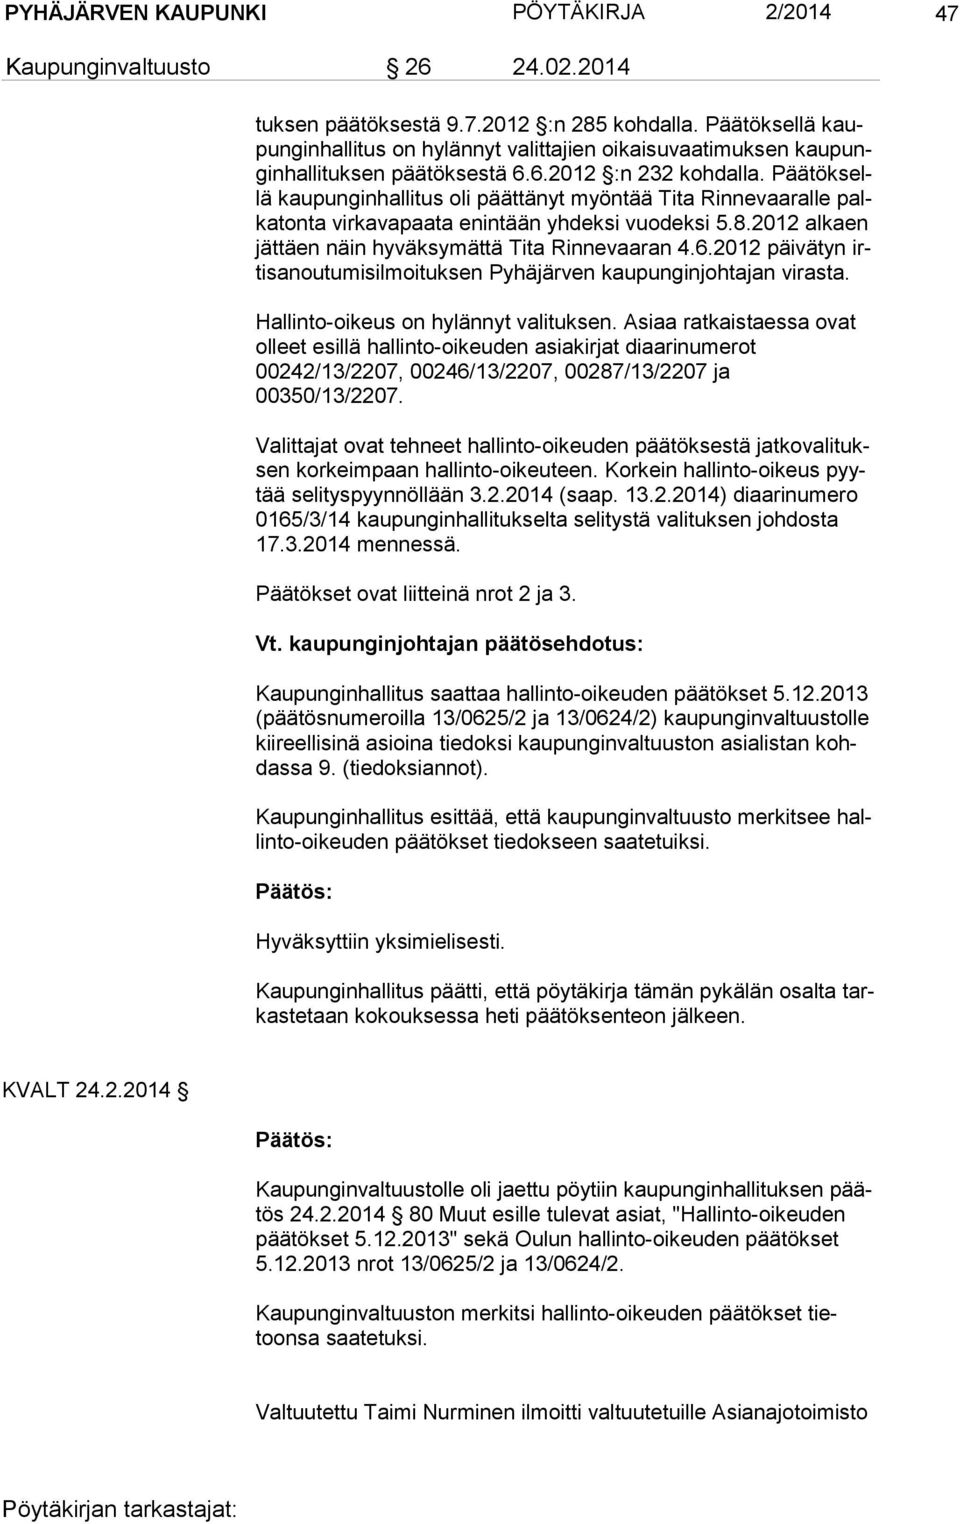 Pää tök sellä kaupunginhallitus oli päättänyt myöntää Tita Rinnevaaralle palka ton ta virkavapaata enintään yhdeksi vuodeksi 5.8.2012 alkaen jät täen näin hyväksymättä Tita Rinnevaaran 4.6.